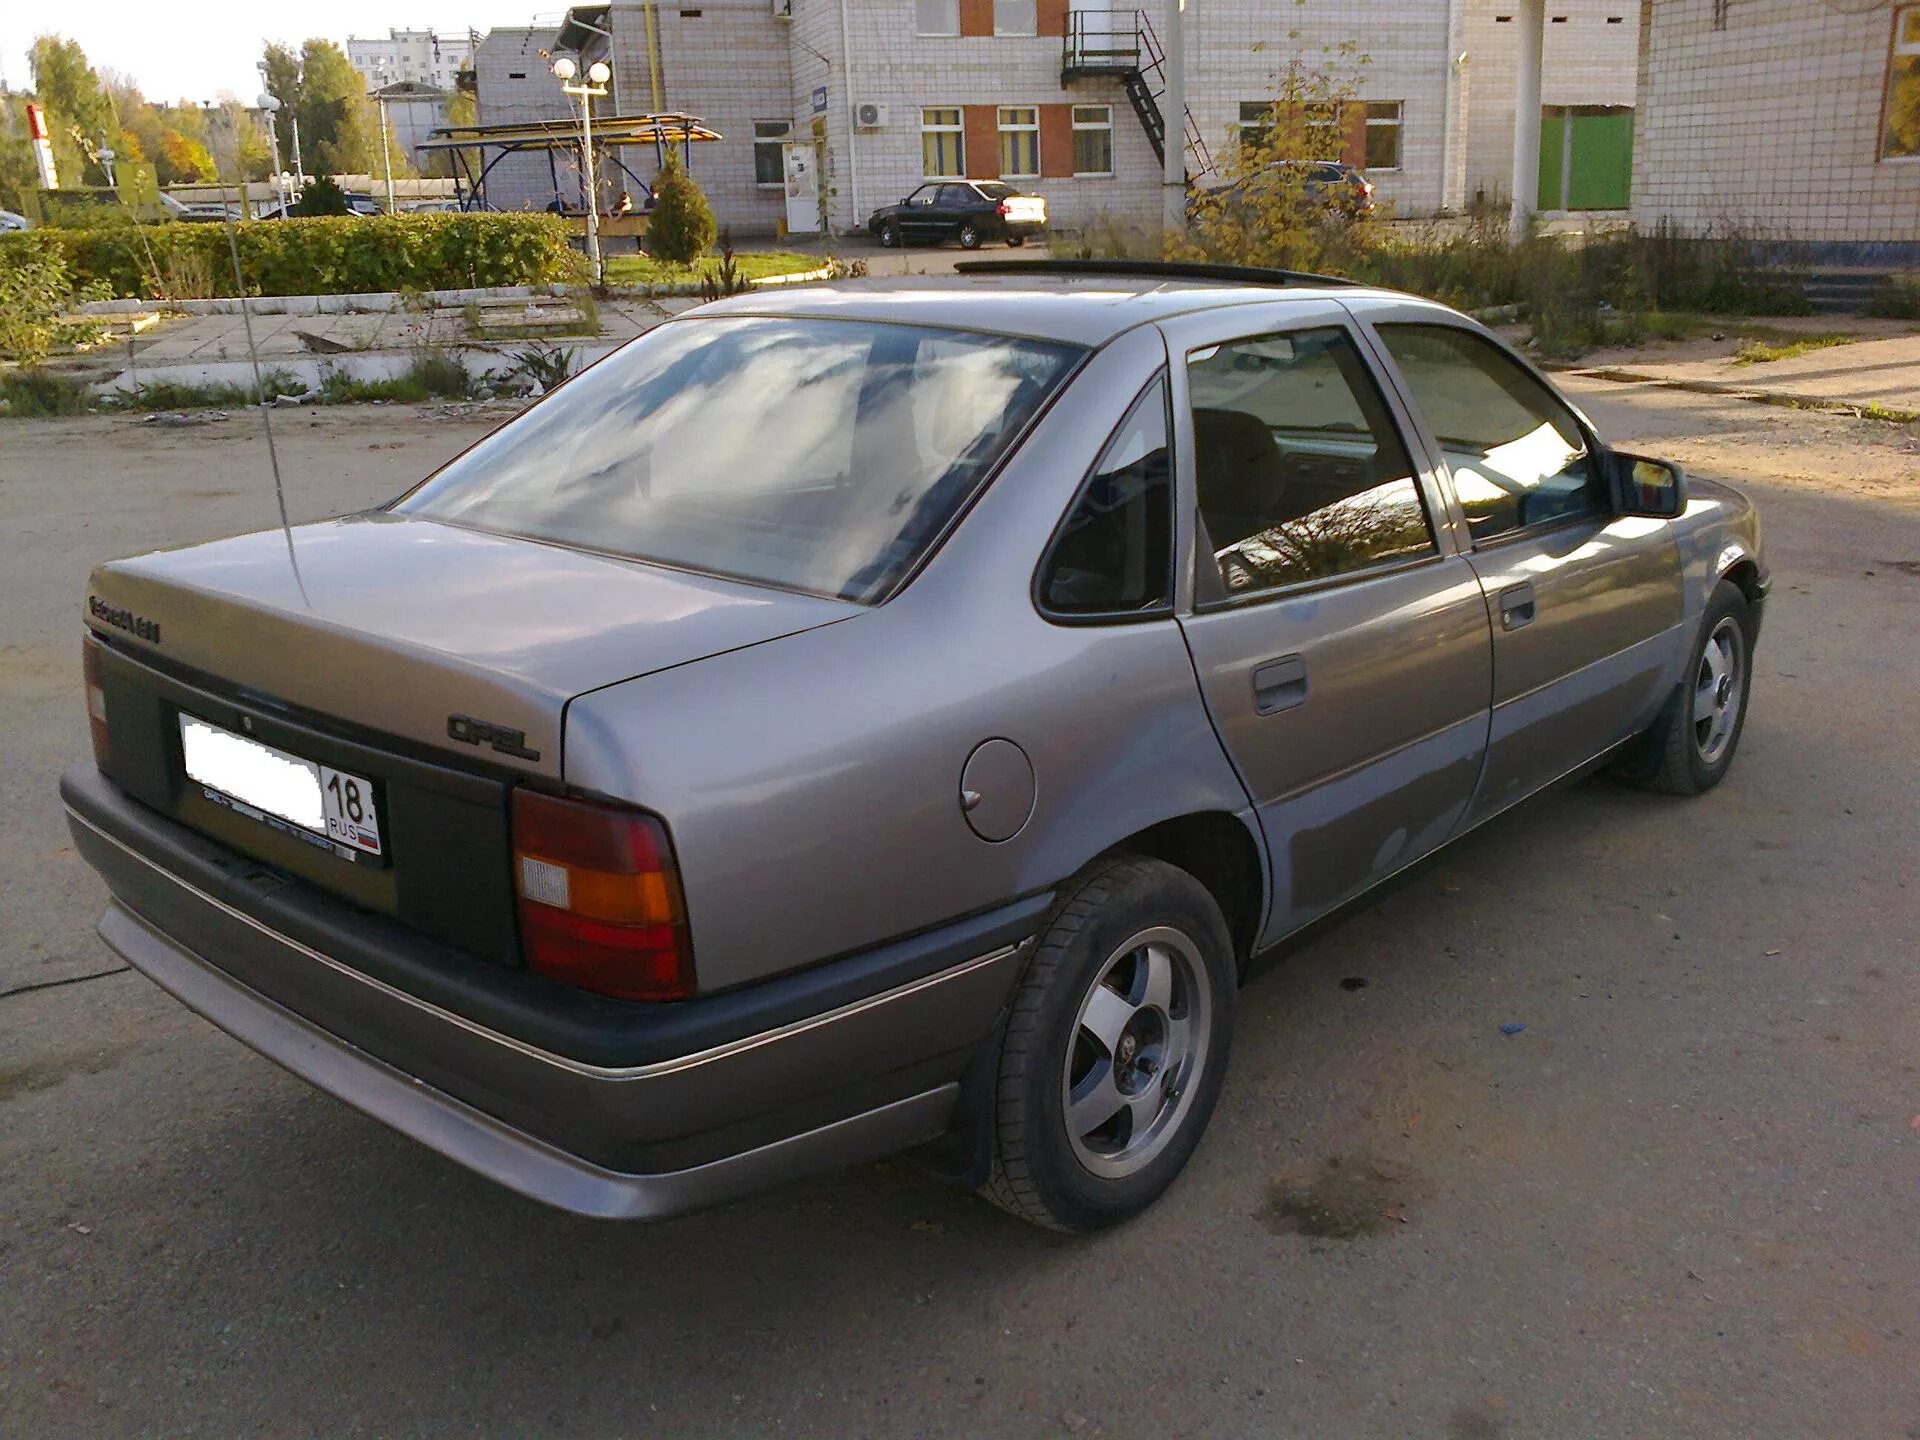 Вектра б года выпуска. Opel Vectra 1990. Опель Вектра 1990. Опель Вектра седан 1990. Опель Вектра 1990г.